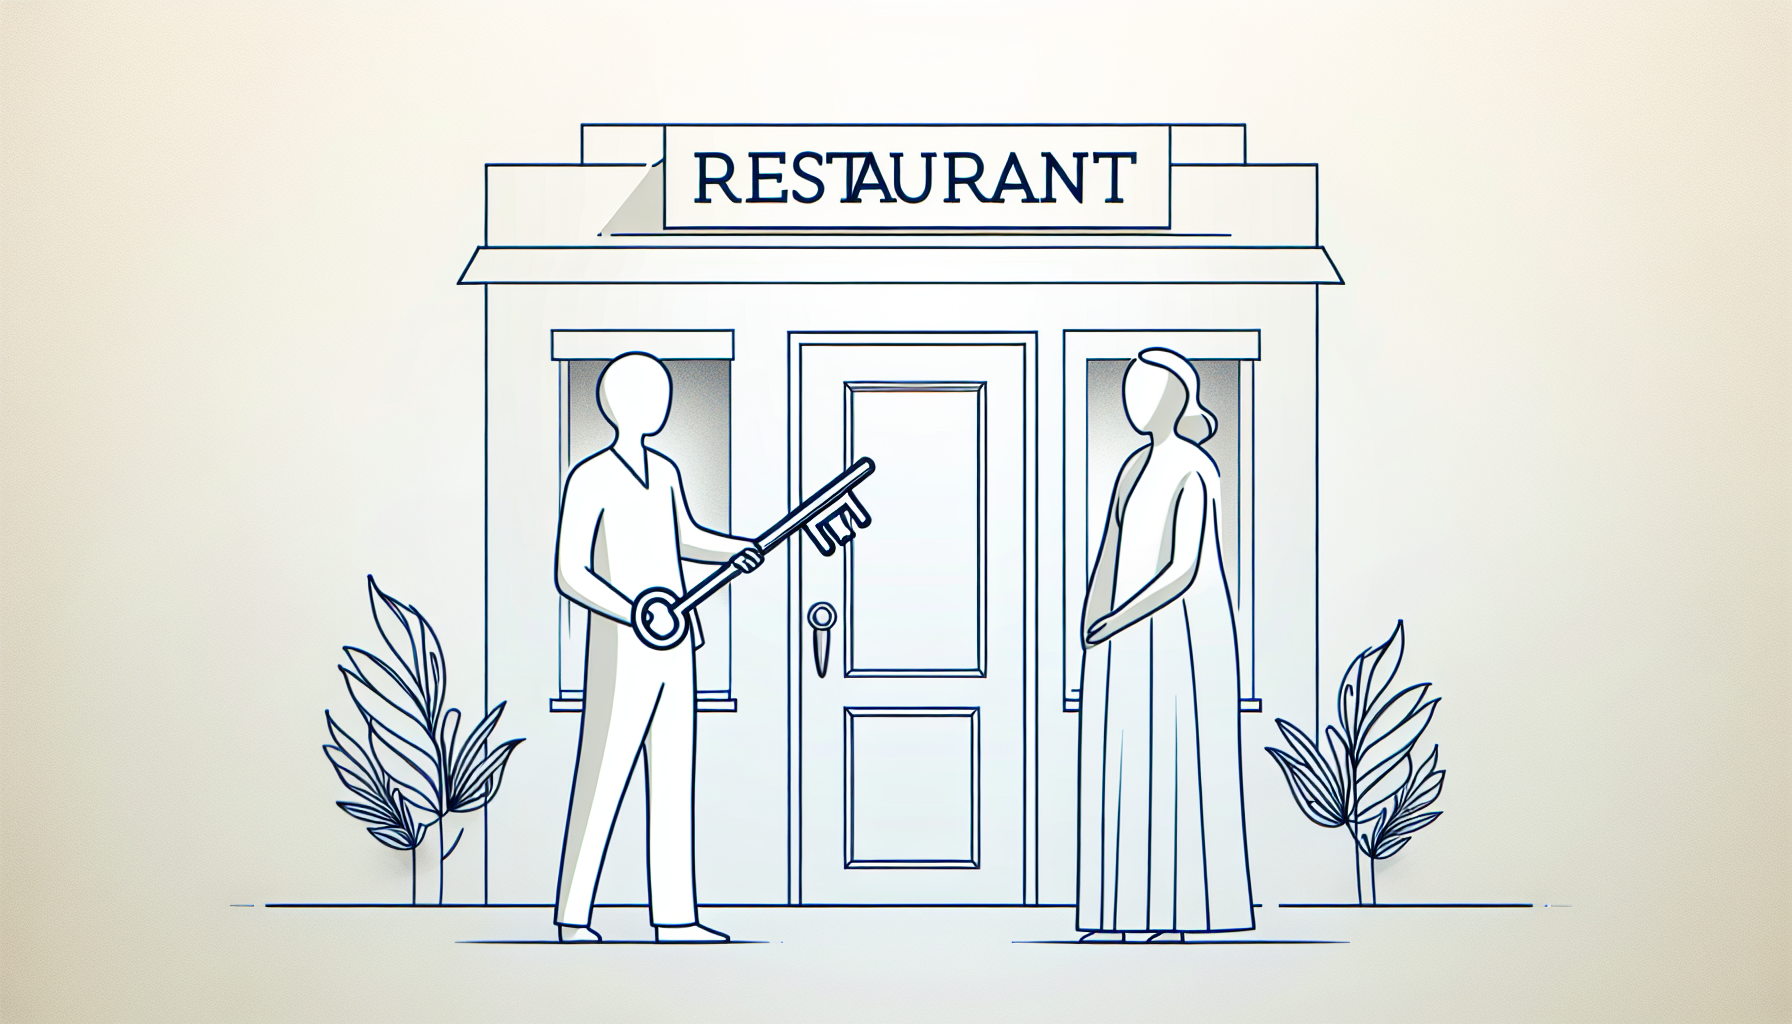 Opening restaurant checklist